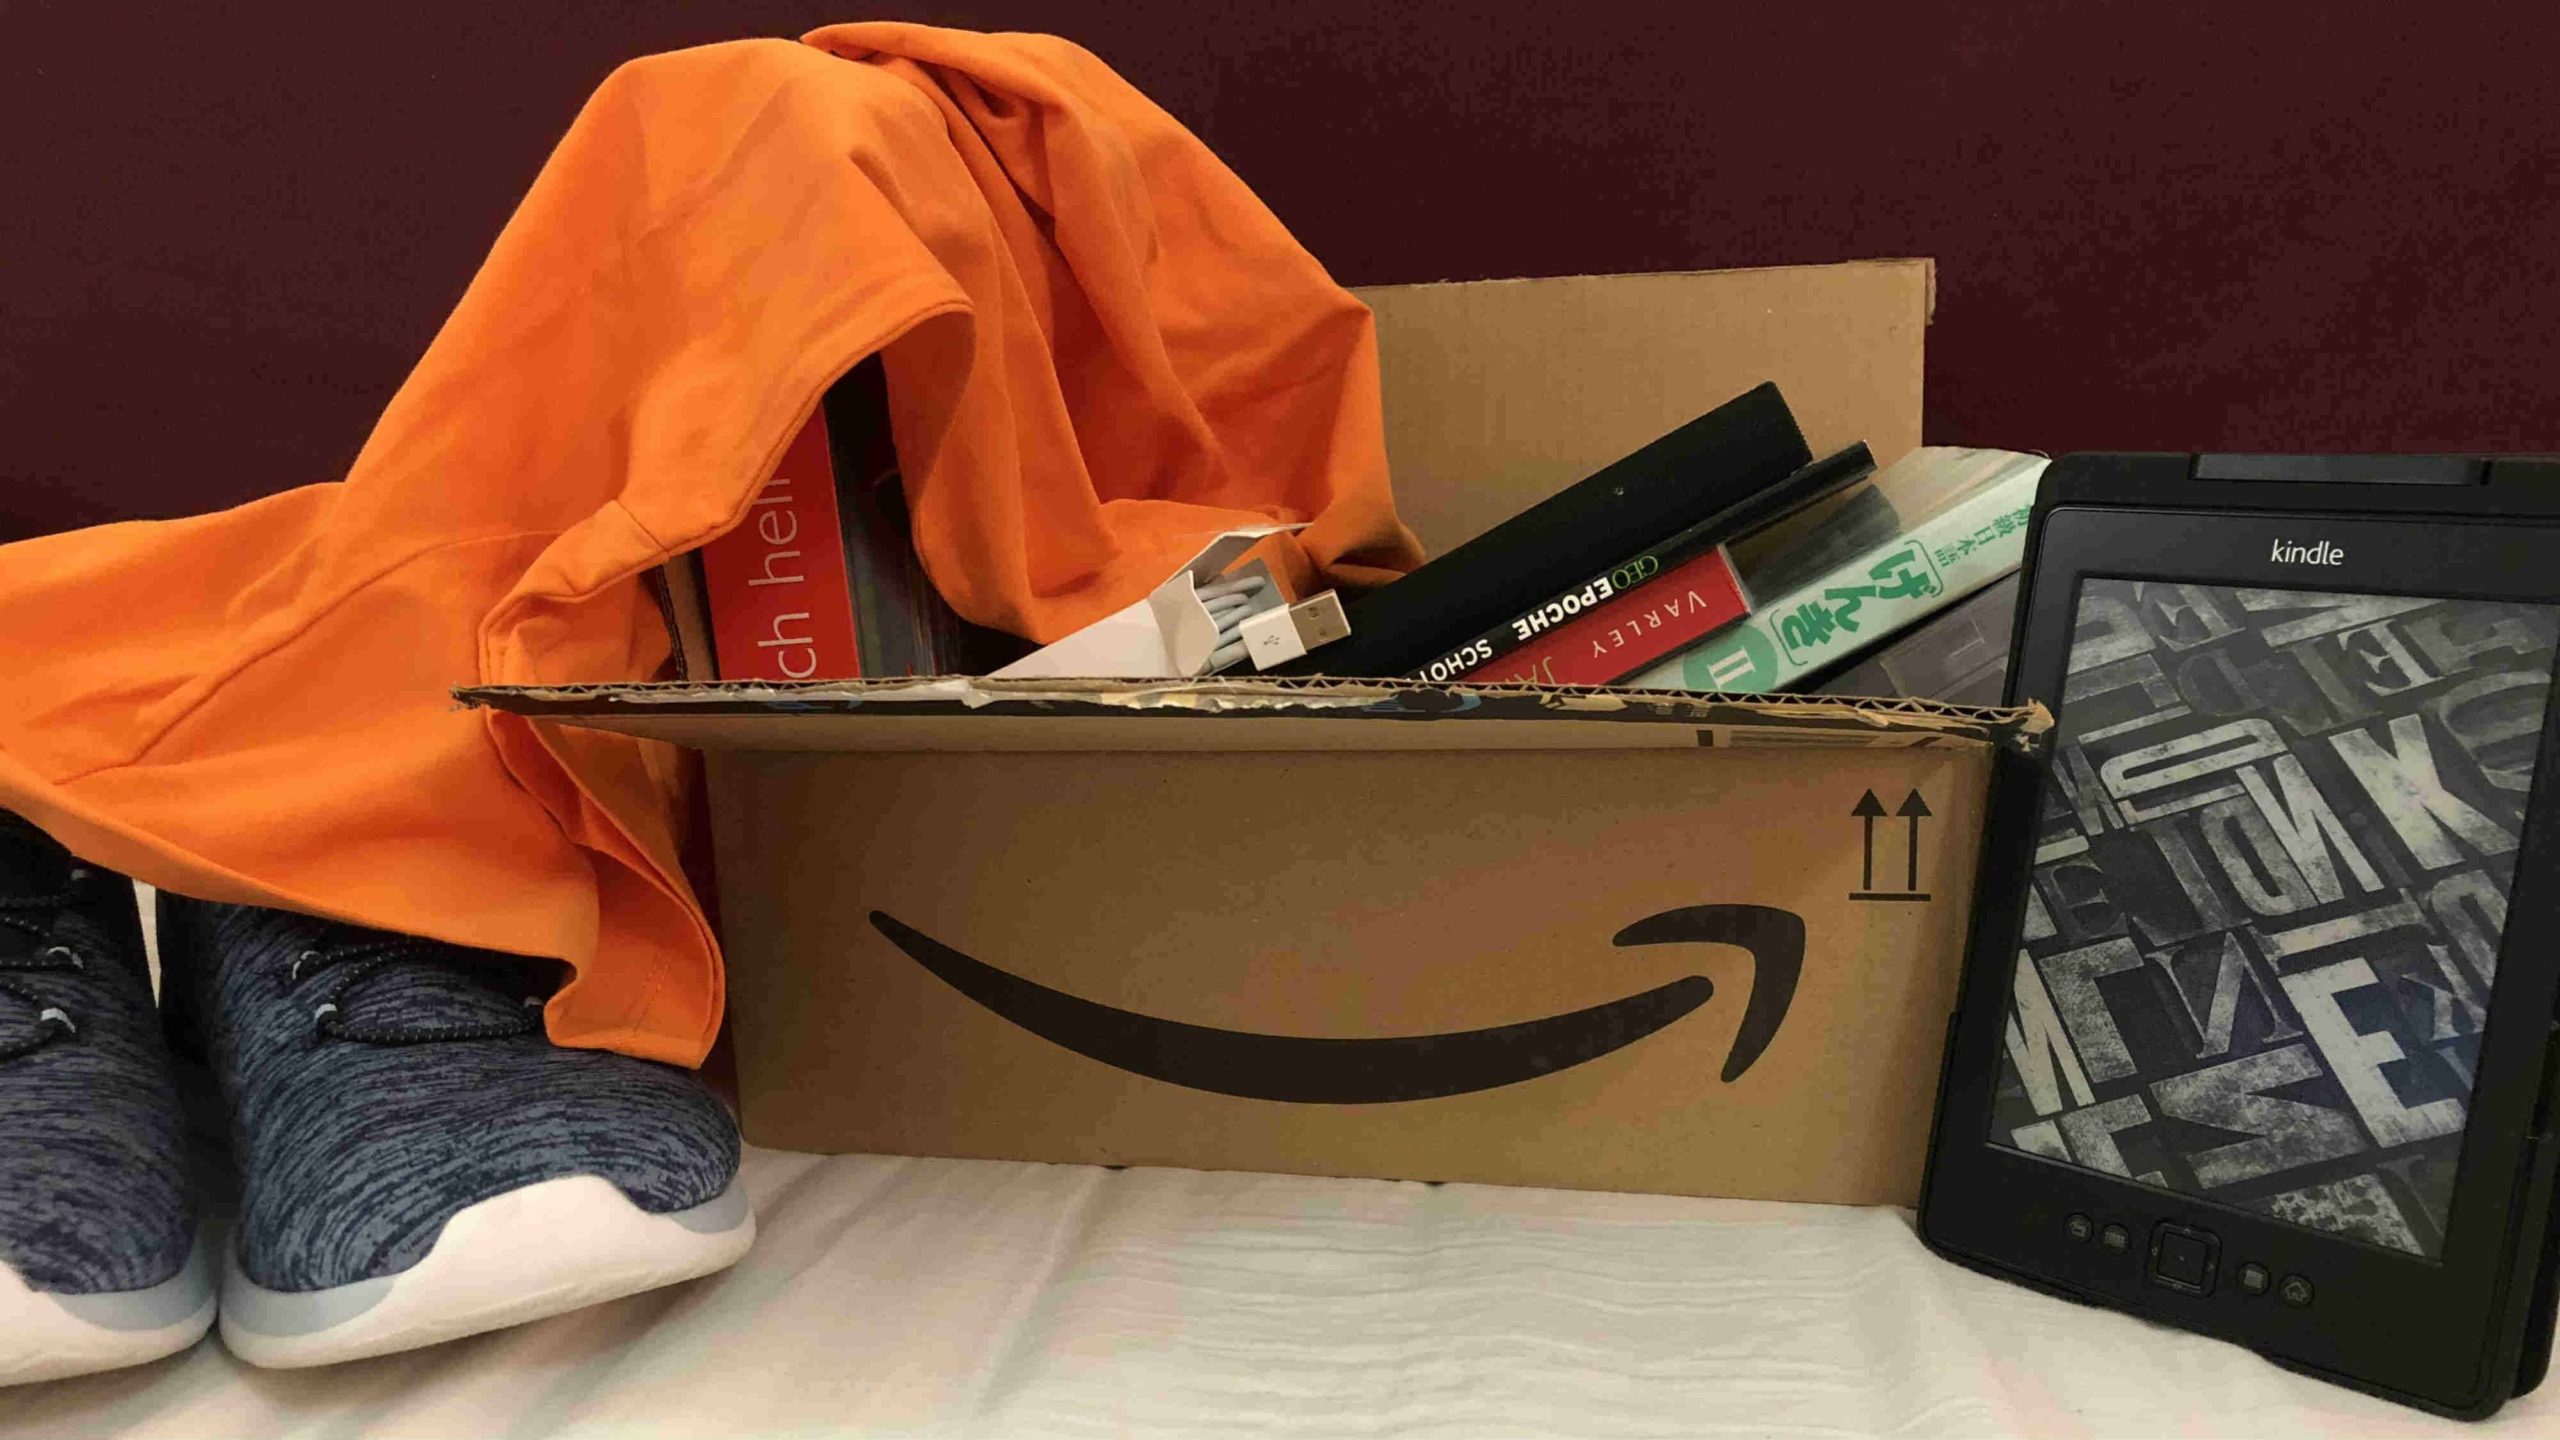 Verschiedene Käufe von Amazon mit einem Paket mit Amazonlogo. Schuhe, Bücher und ein Kindle.